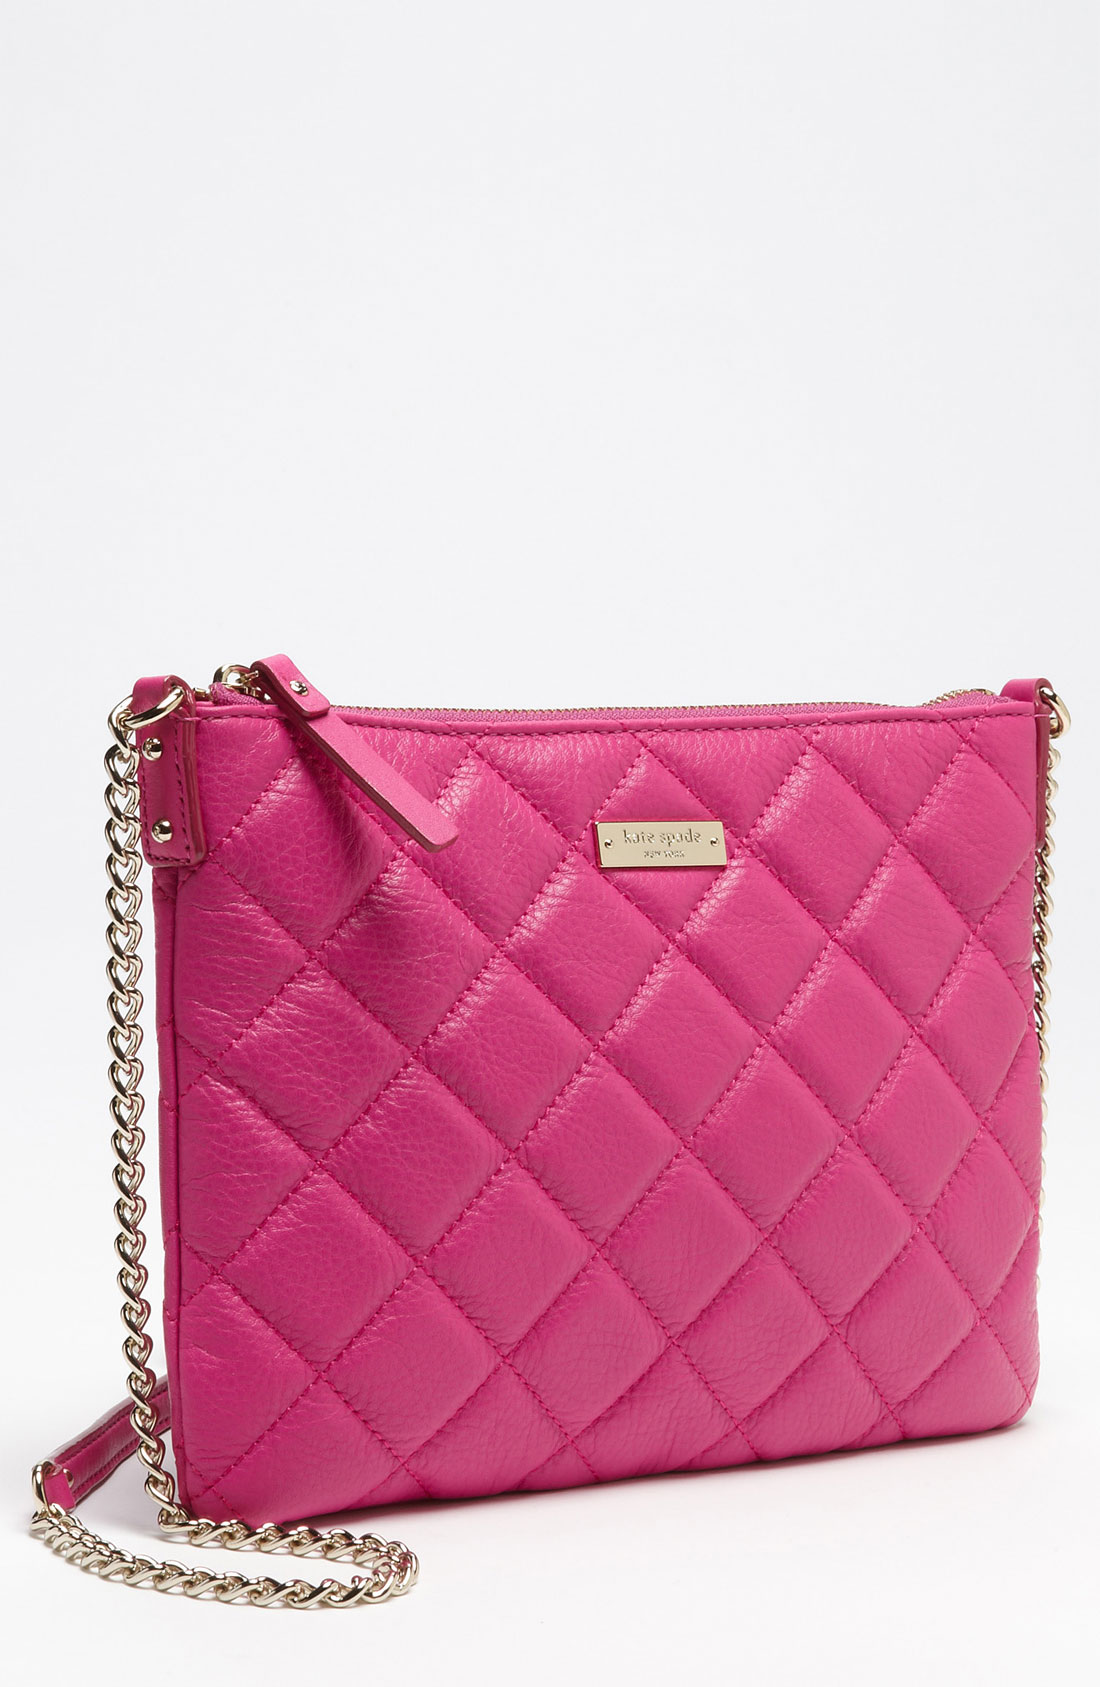 Kate Spade Pink Crossbody Handbag | semashow.com